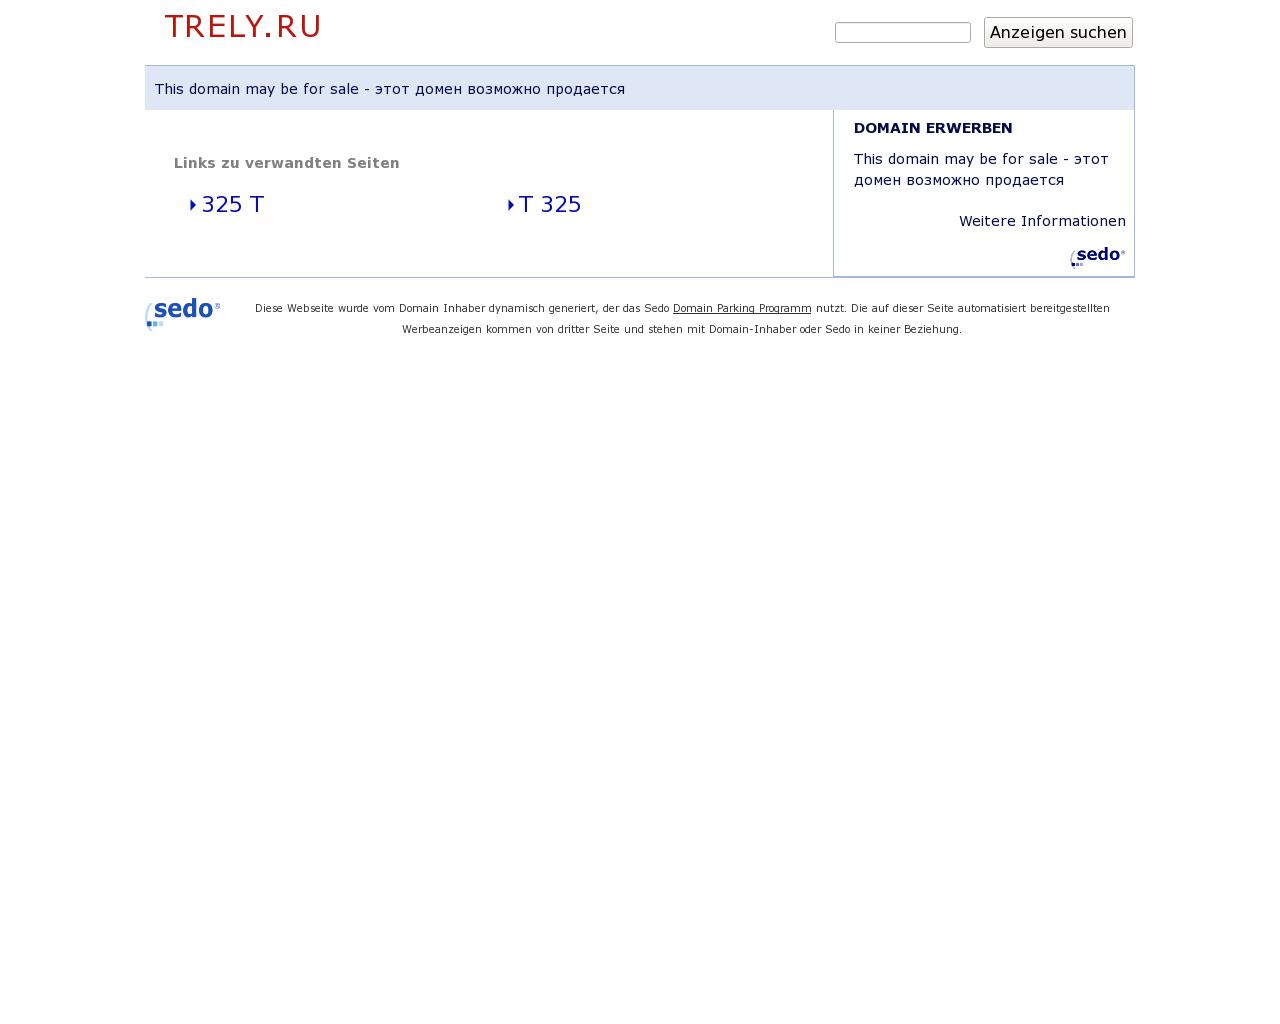 Изображение сайта trely.ru в разрешении 1280x1024